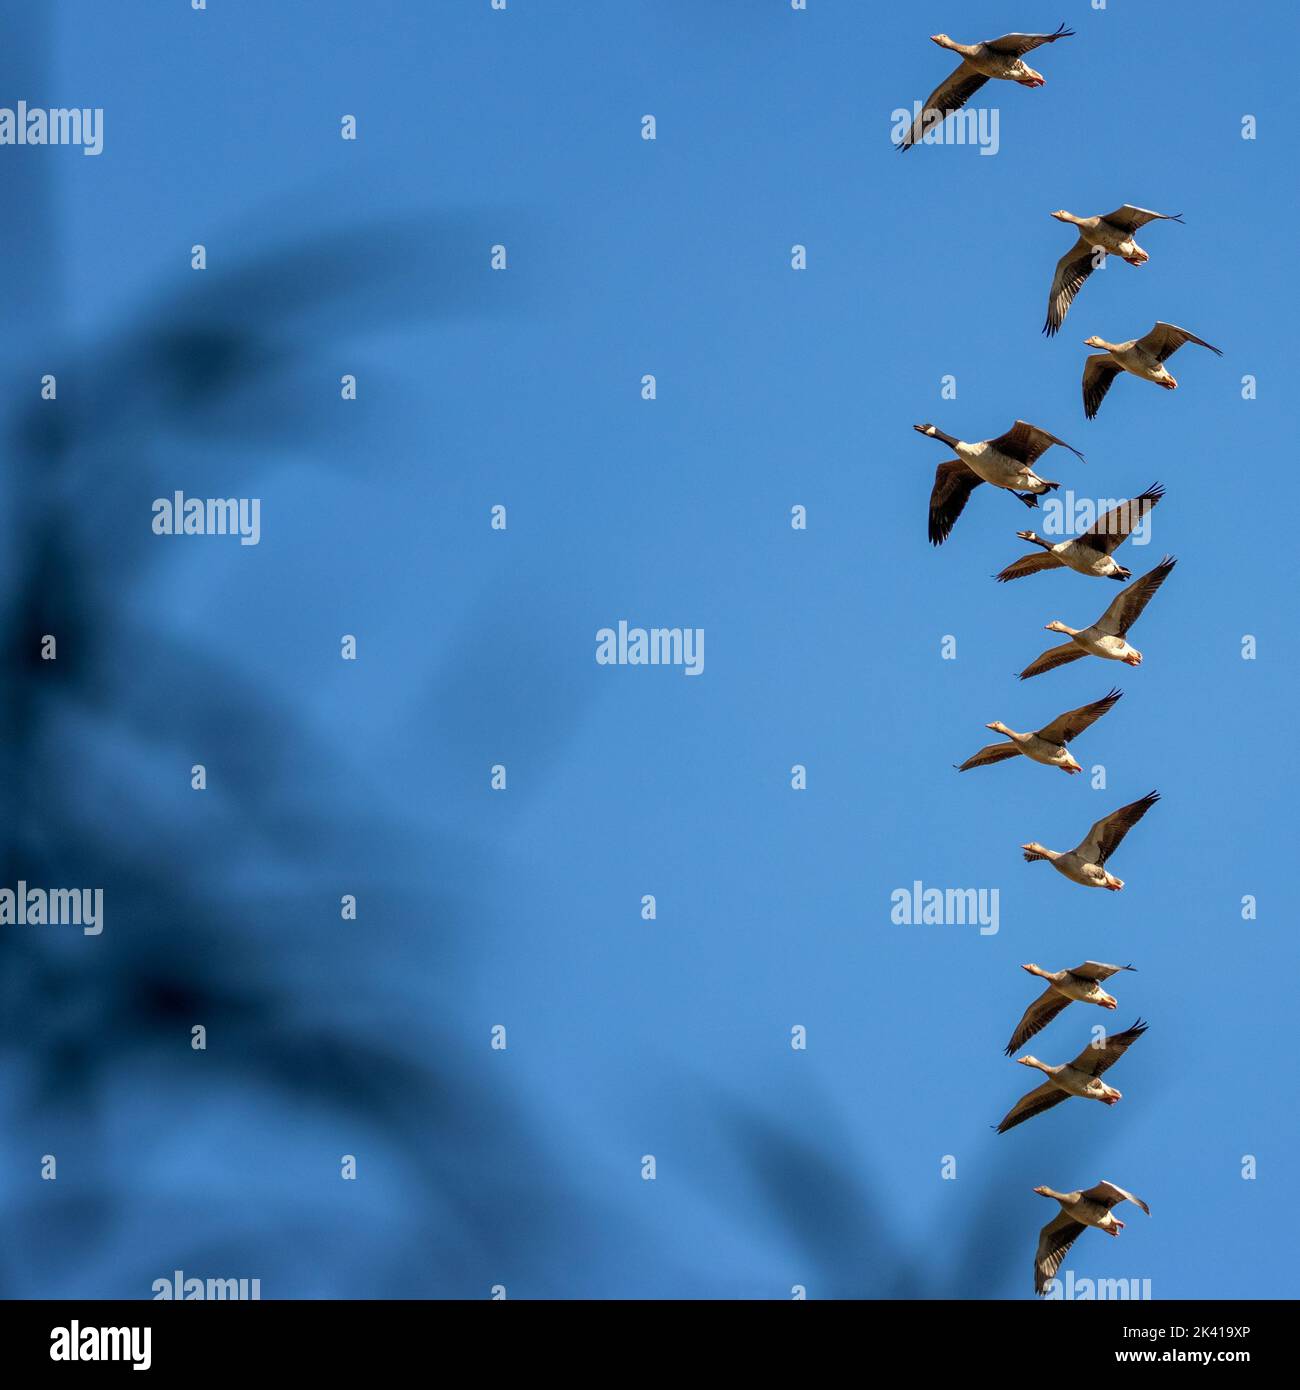 Gemischte Gruppe von Kanadagänsen (Branta canadensis) und Graugänsen (Anser anser), die gegen einen blauen Himmel fliegen, Großbritannien Stockfoto